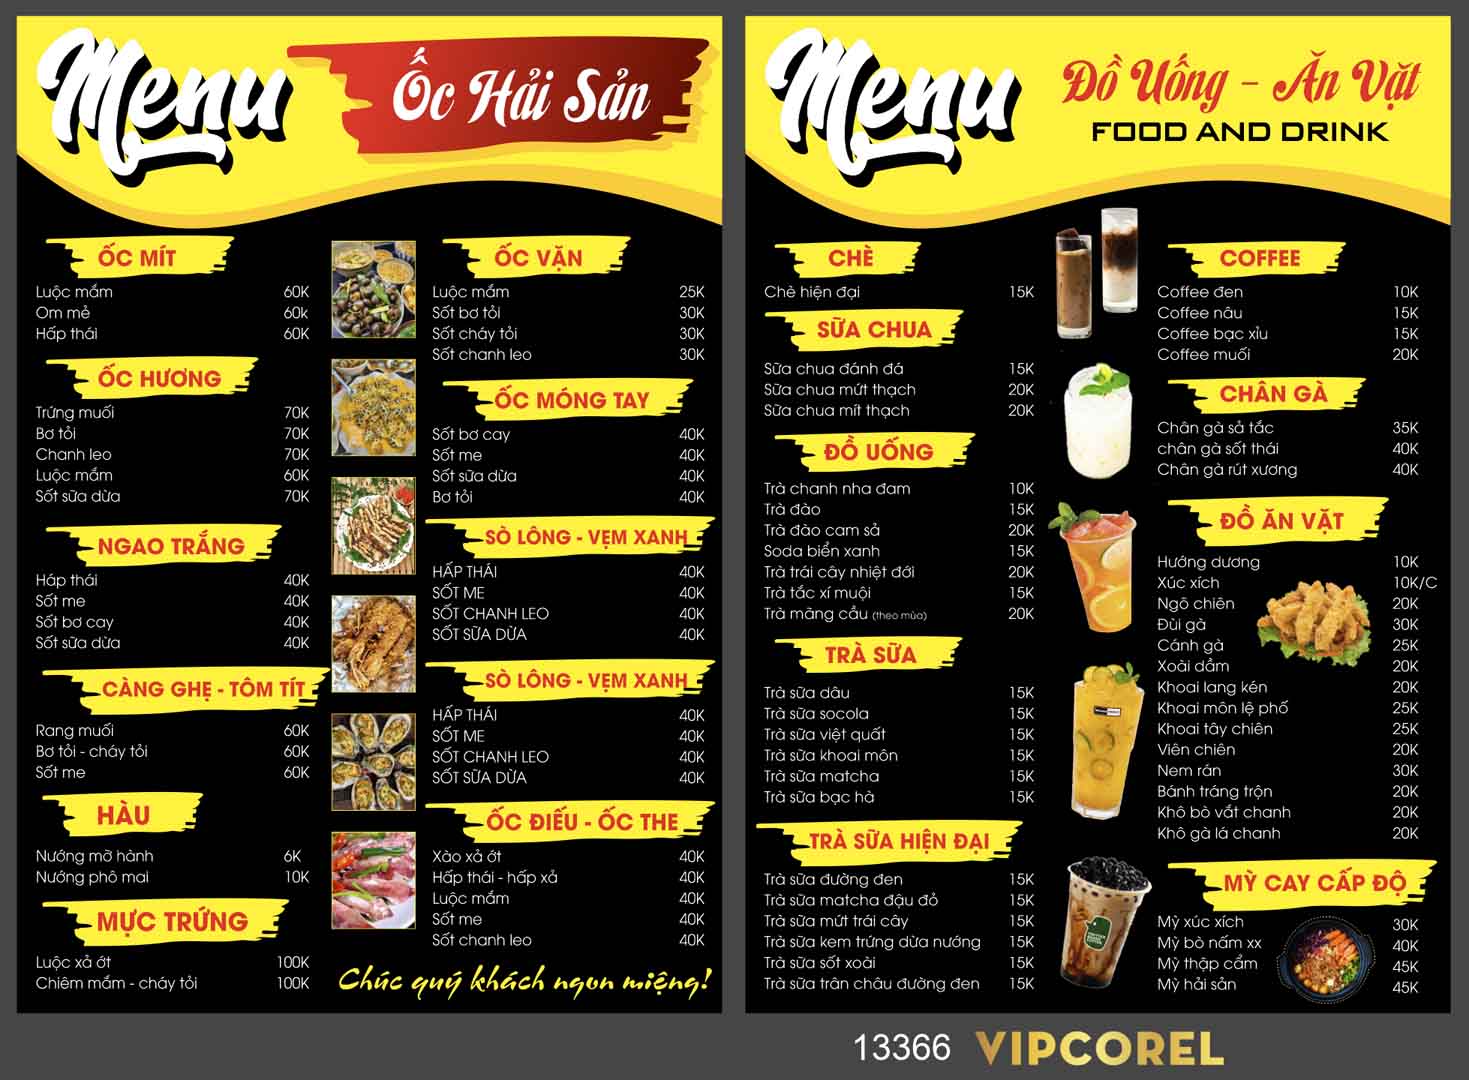 menu oc hai san - do uong - an vat.jpg